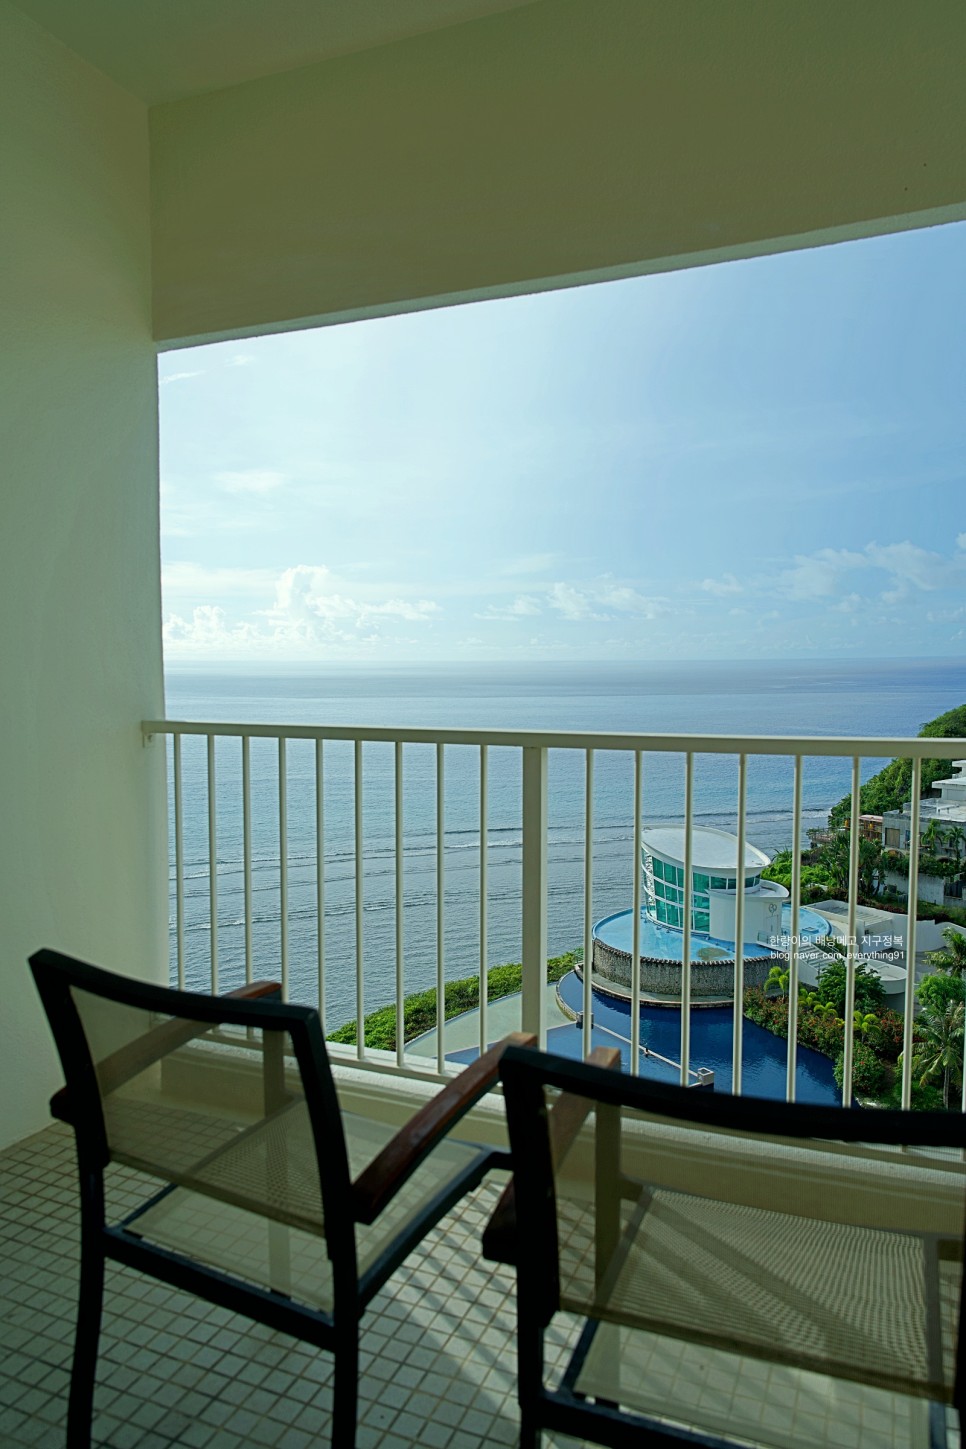 괌 신혼여행 숙소 괌 리가로얄호텔 오션뷰 객실이 멋져요!